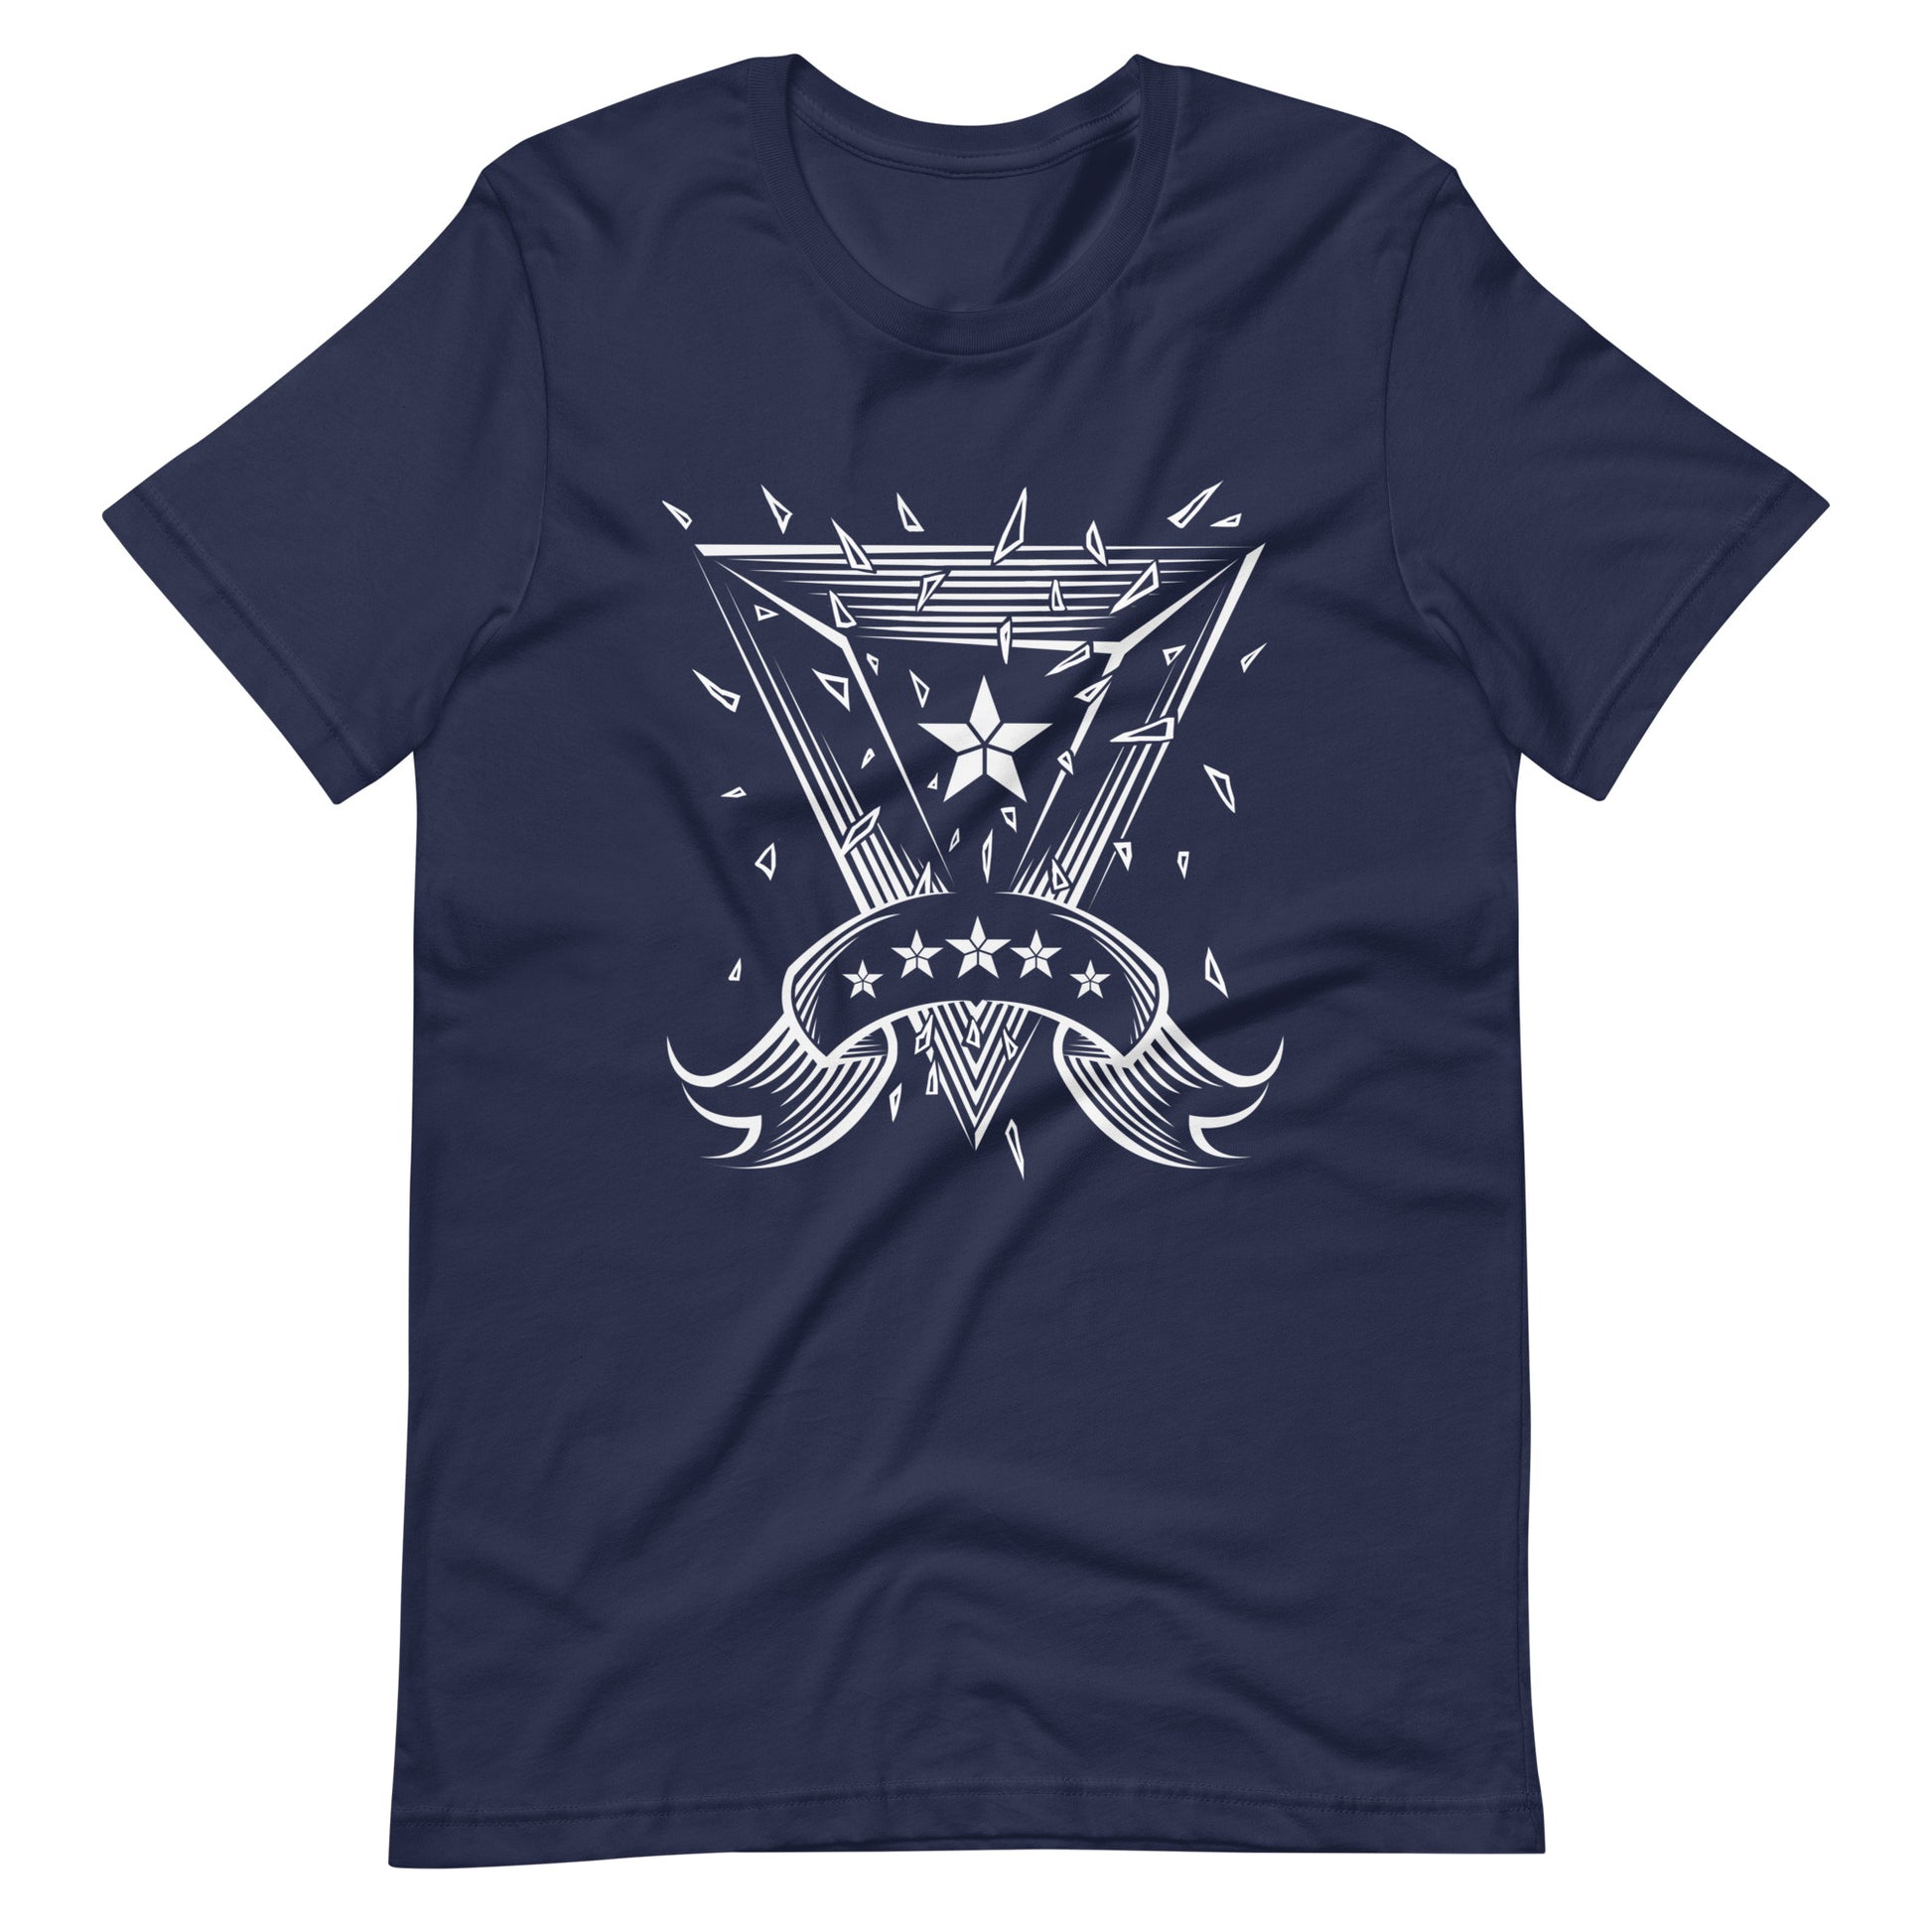 Starlight - Men's t-shirt - Navy Front